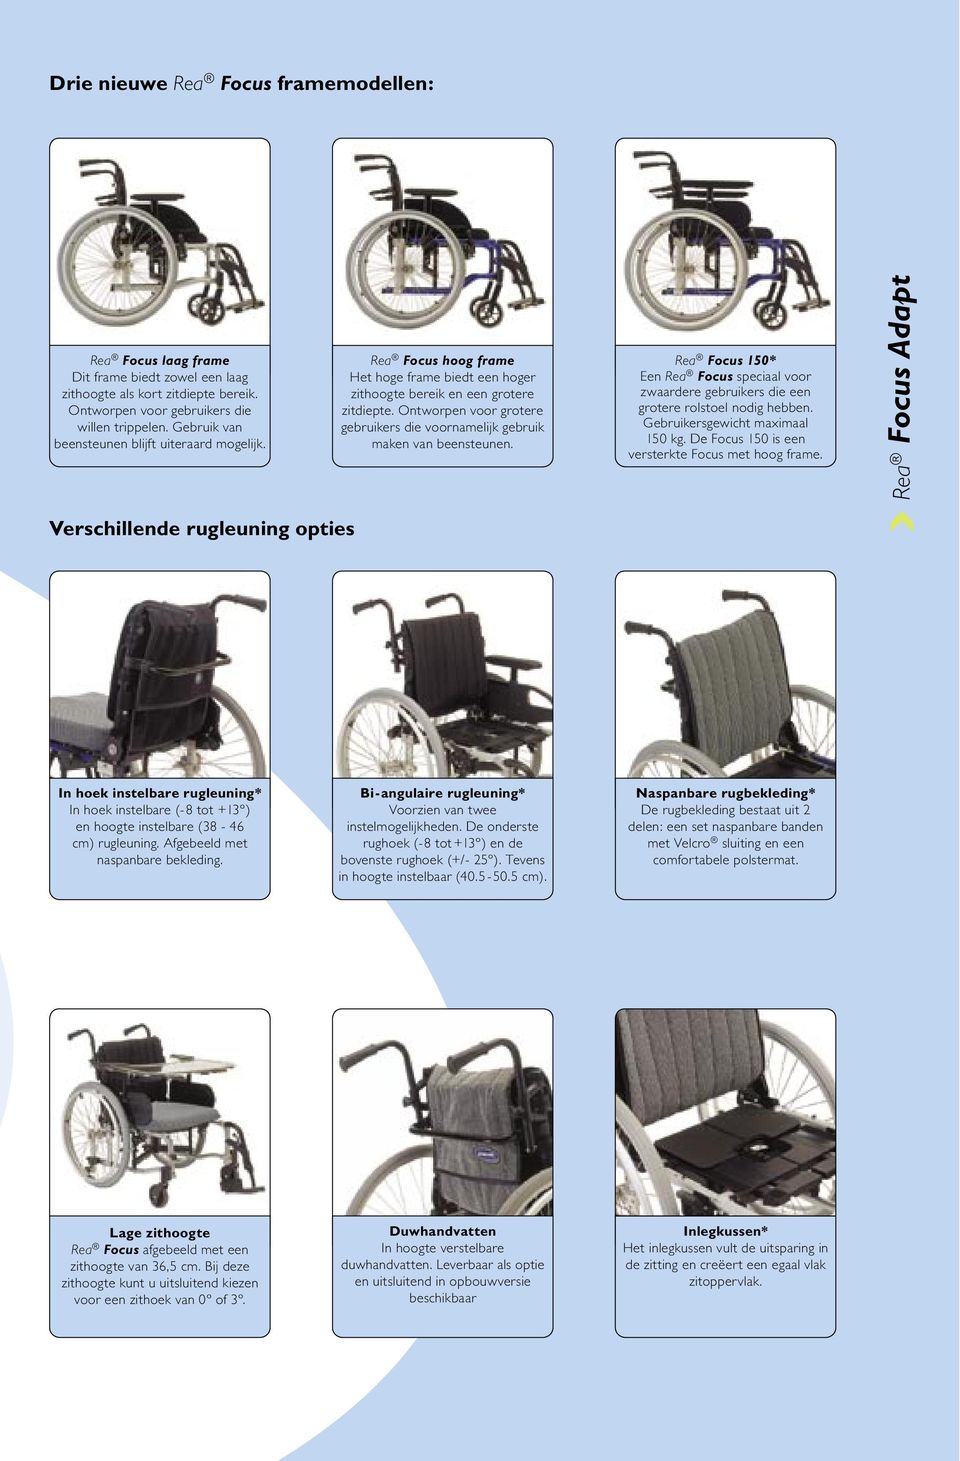 Ontworpen voor grotere gebruikers die voornamelijk gebruik maken van beensteunen. Rea Focus 150* Een Rea Focus speciaal voor zwaardere gebruikers die een grotere rolstoel nodig hebben.